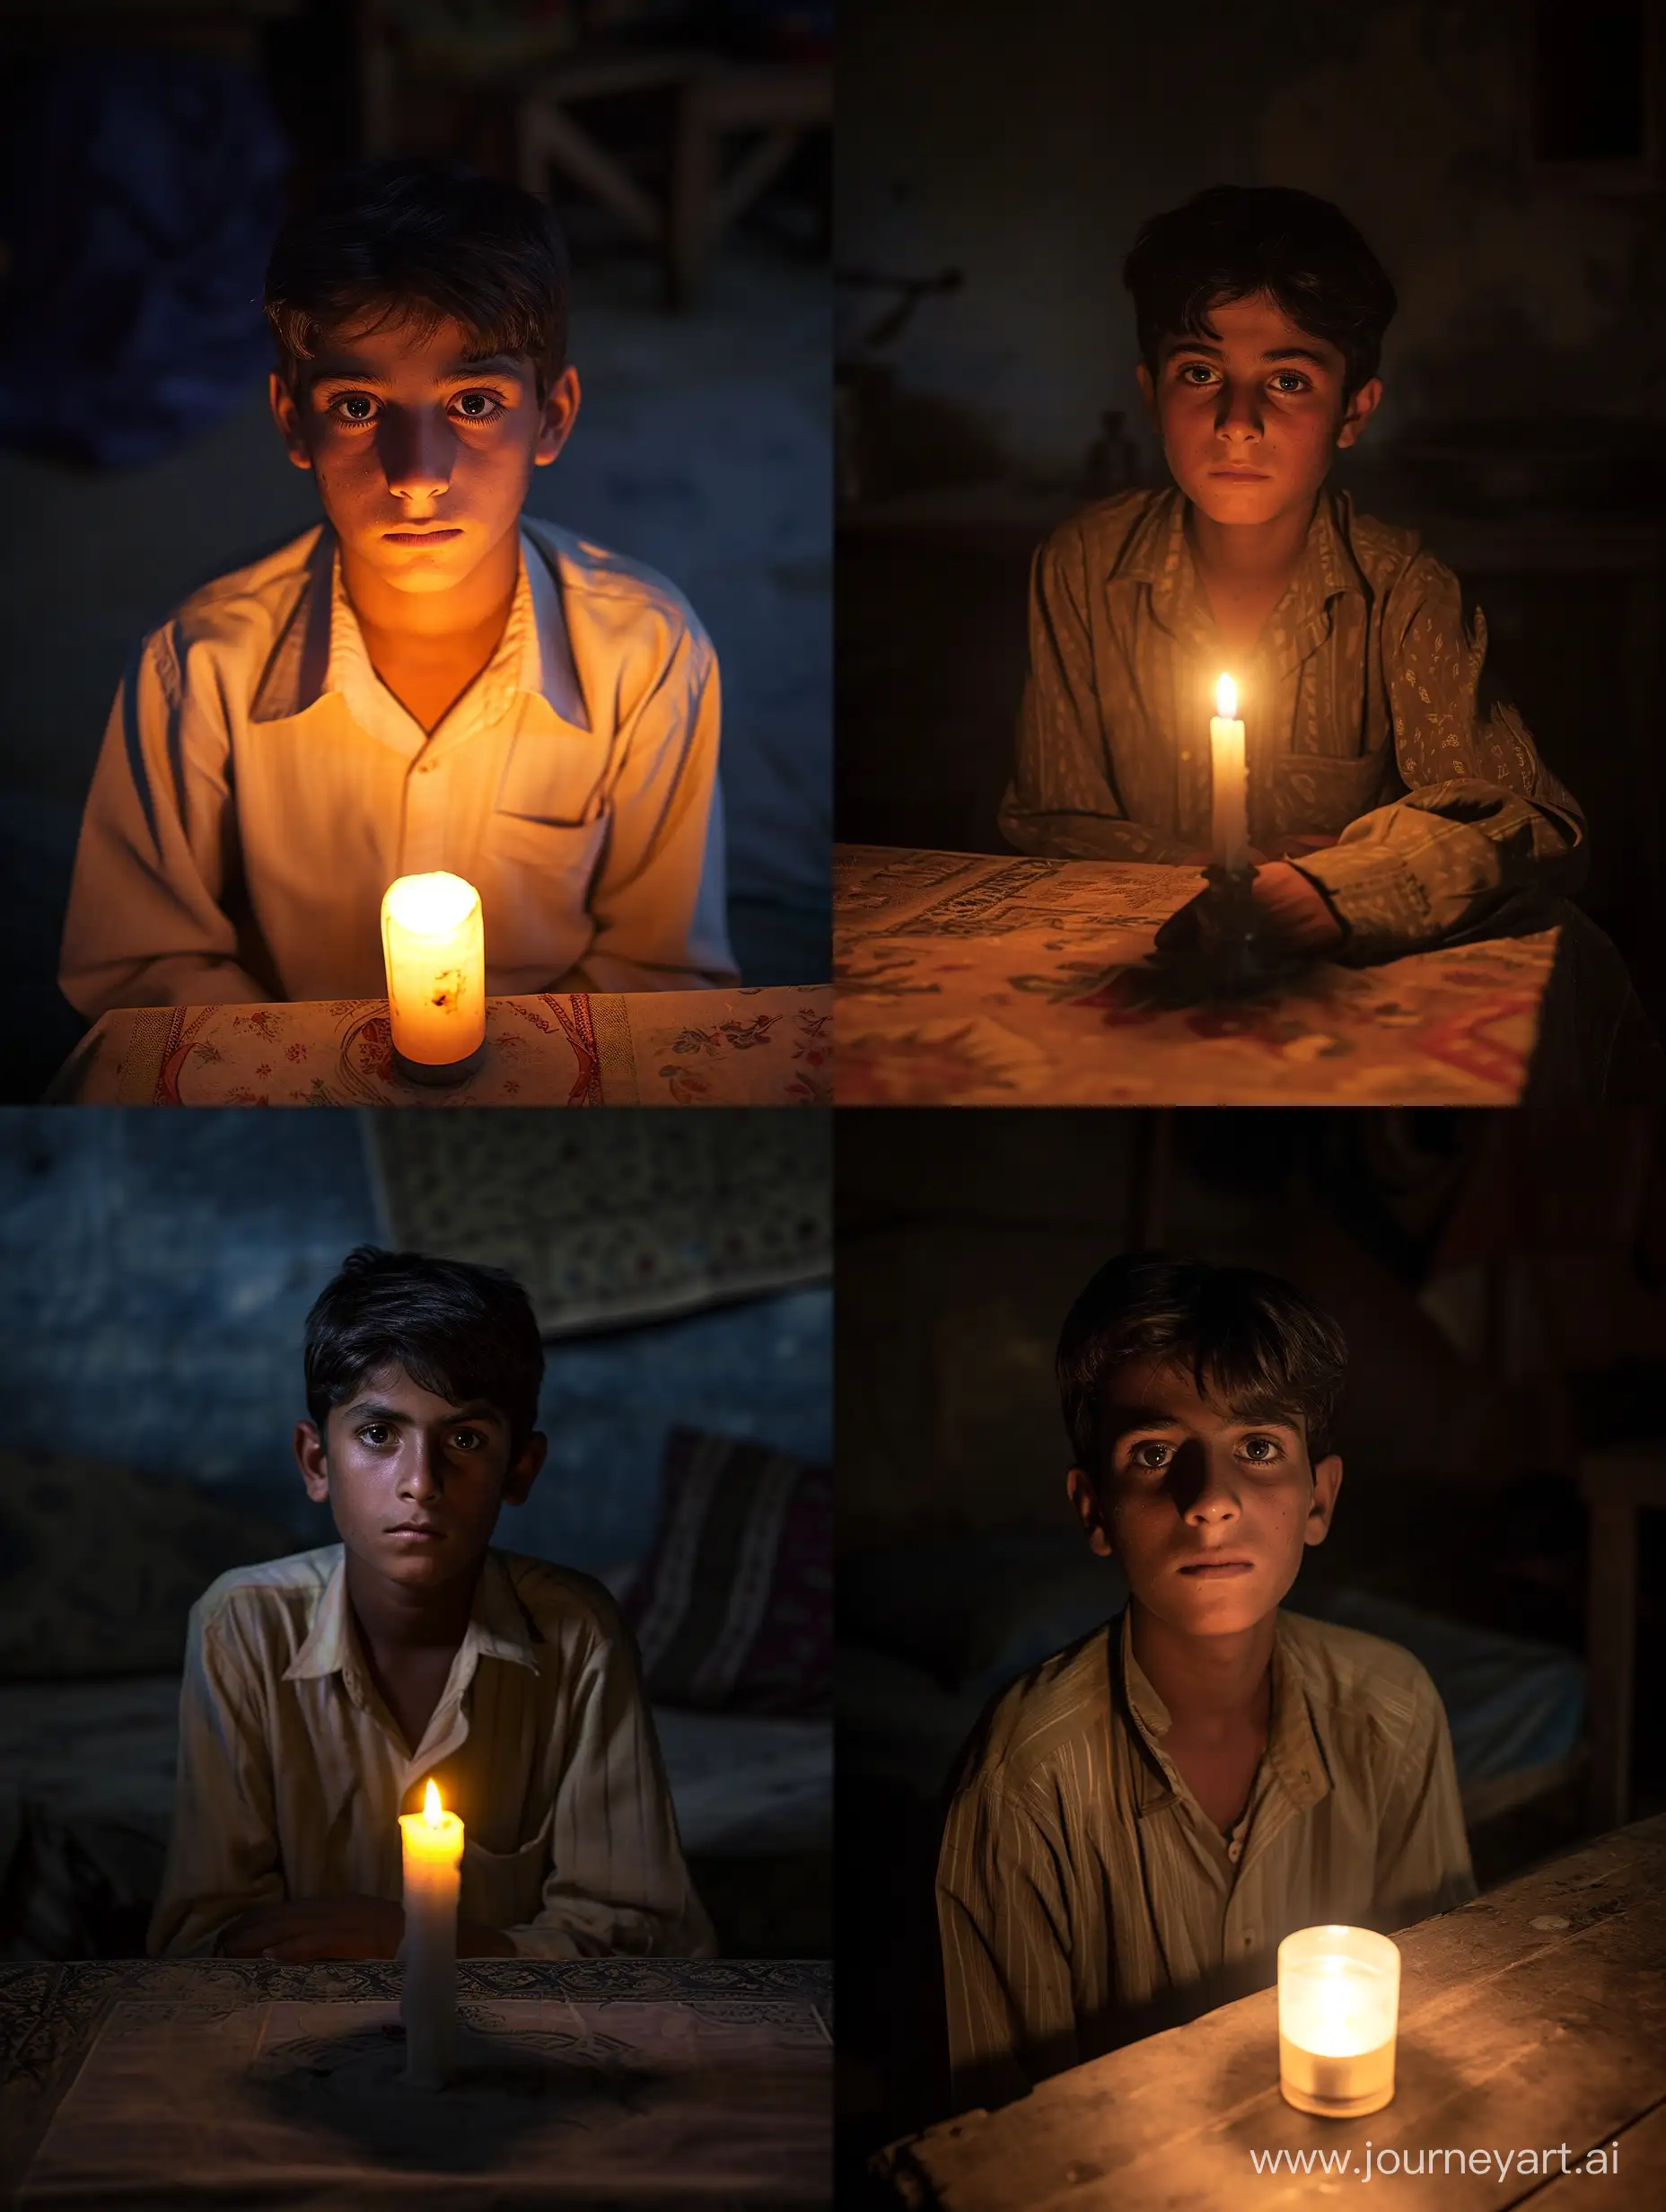 Charming-19YearOld-Pakistani-Boy-in-Candlelit-Ambiance